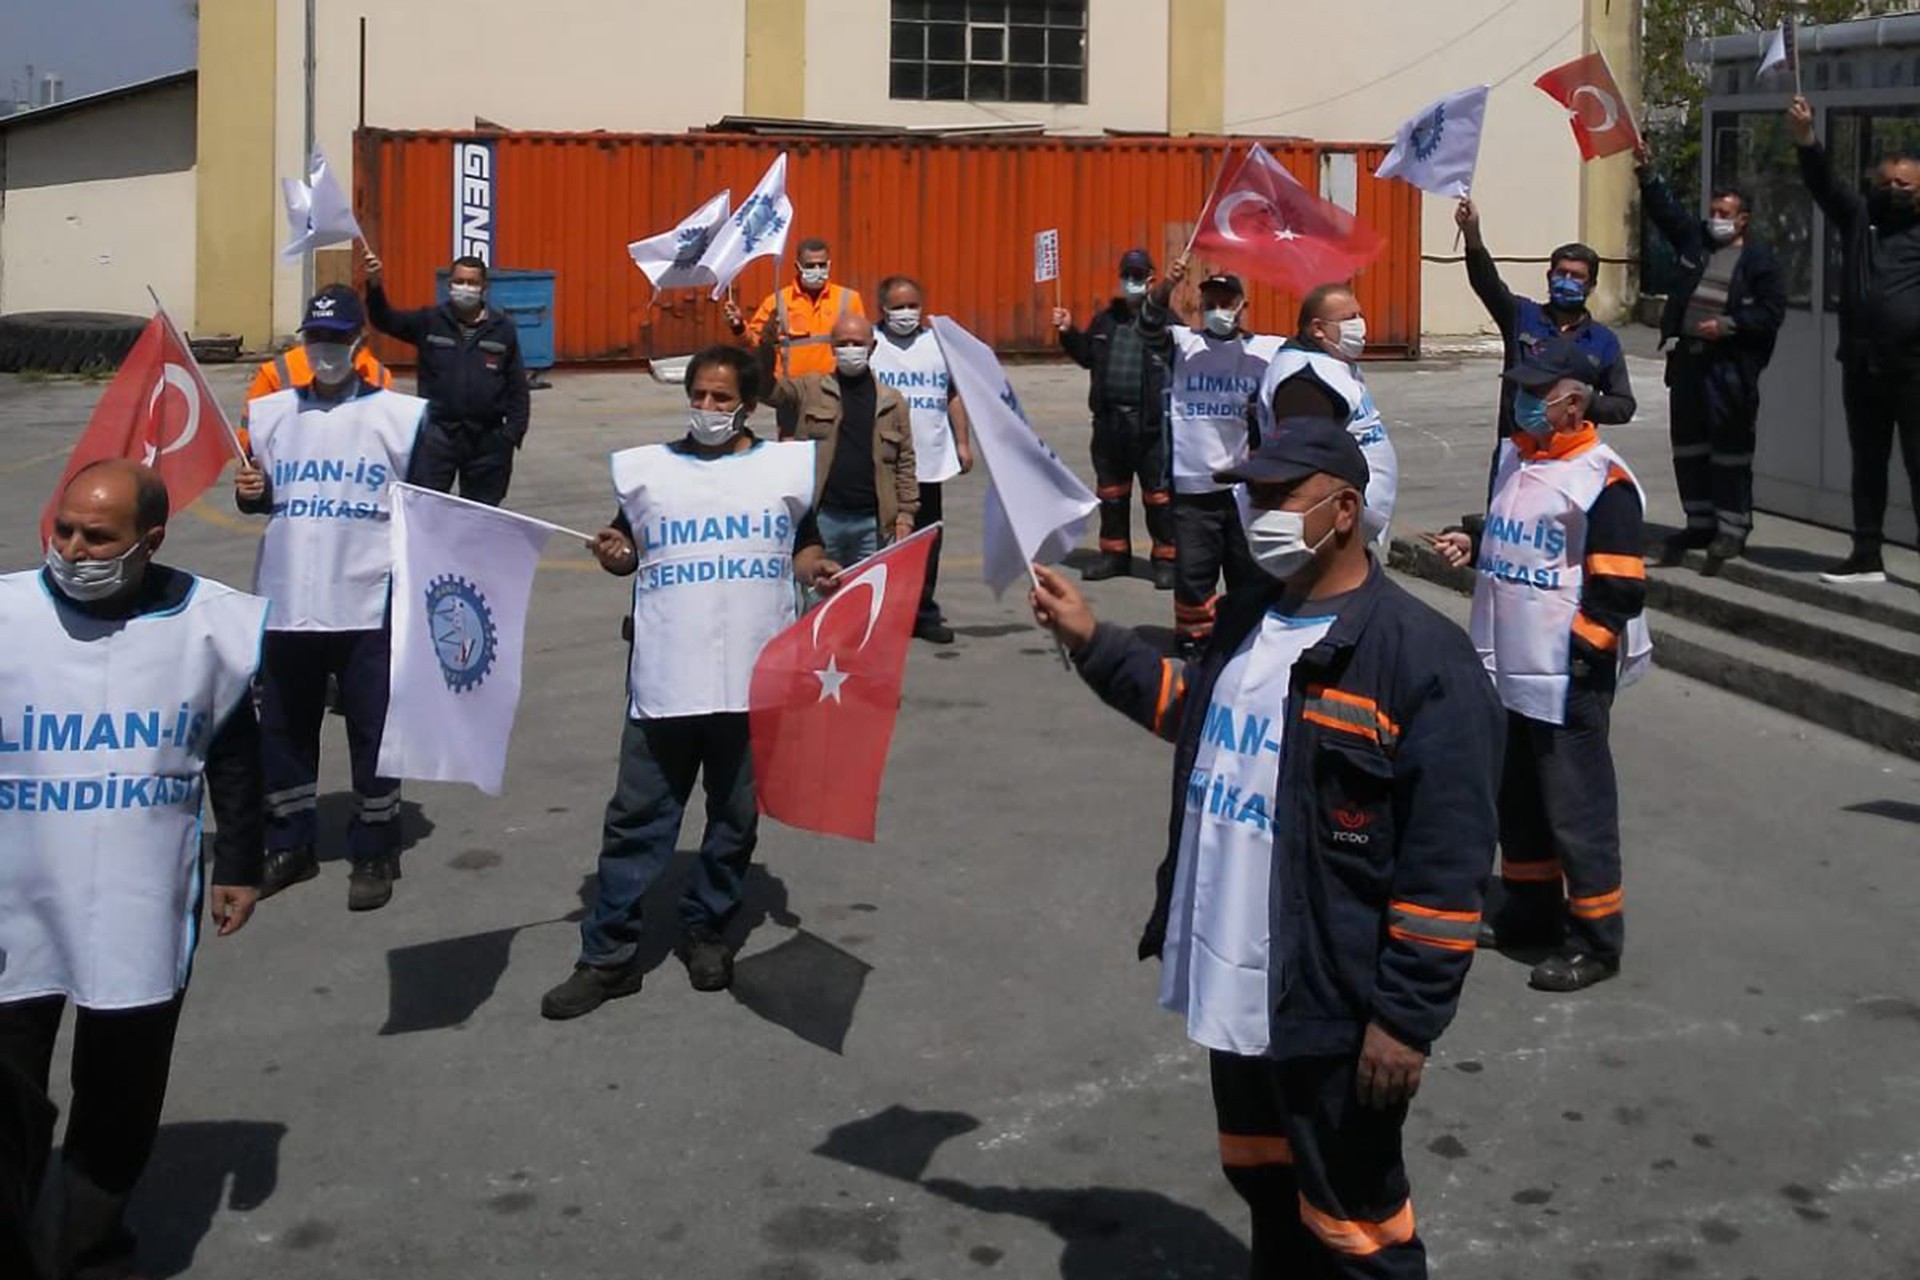 İstanbul İşçi Sendikaları Şubeler Platformu üyesi işçiler 1 Mayıs'ı kutladı